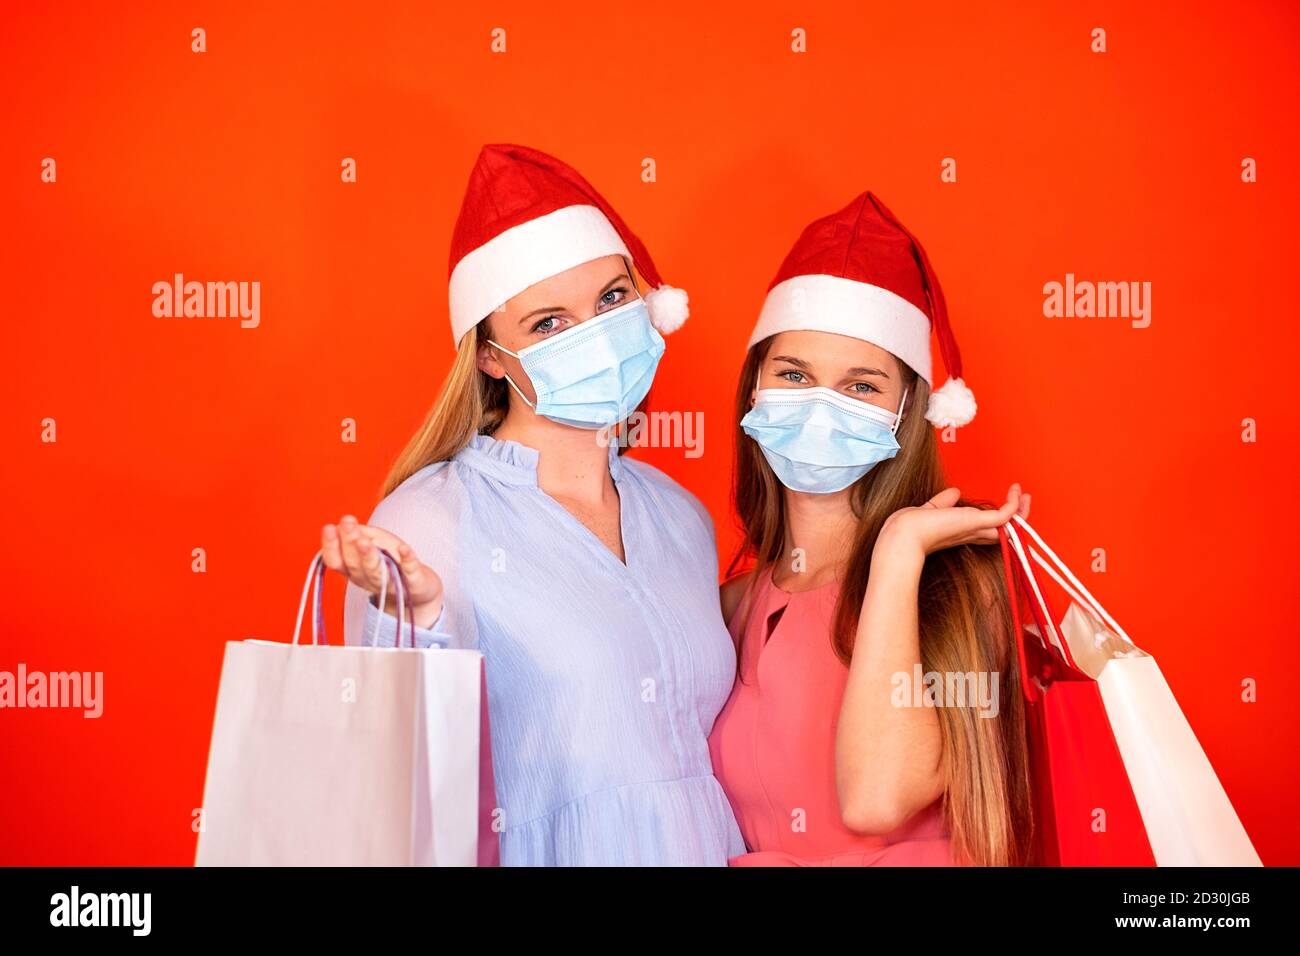 Le amiche indossano la maschera chirurgica e il cappello di Natale che tiene lo shopping borse su uno sfondo rosso arancione brillante Foto Stock